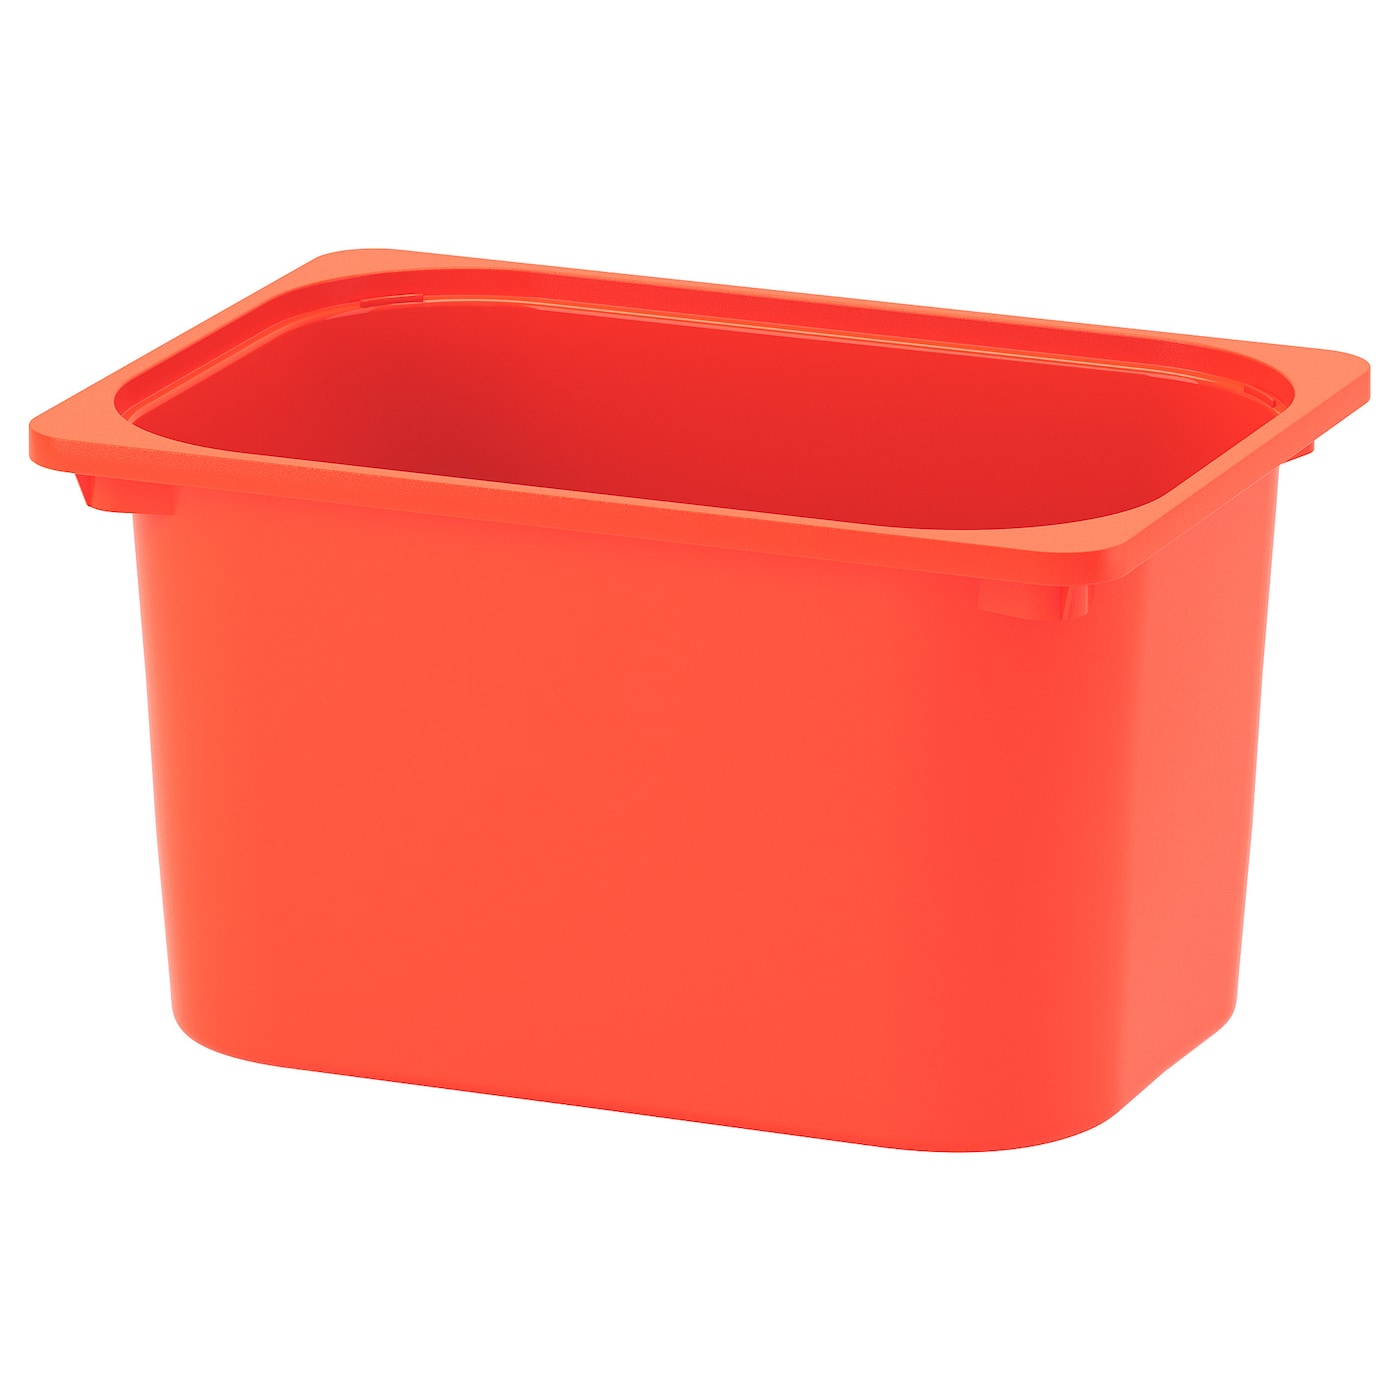 Ящик для хранения игрушек - TROFAST IKEA/ ТРУФАСТ ИКЕА, 42x30x23 см, оранжевый